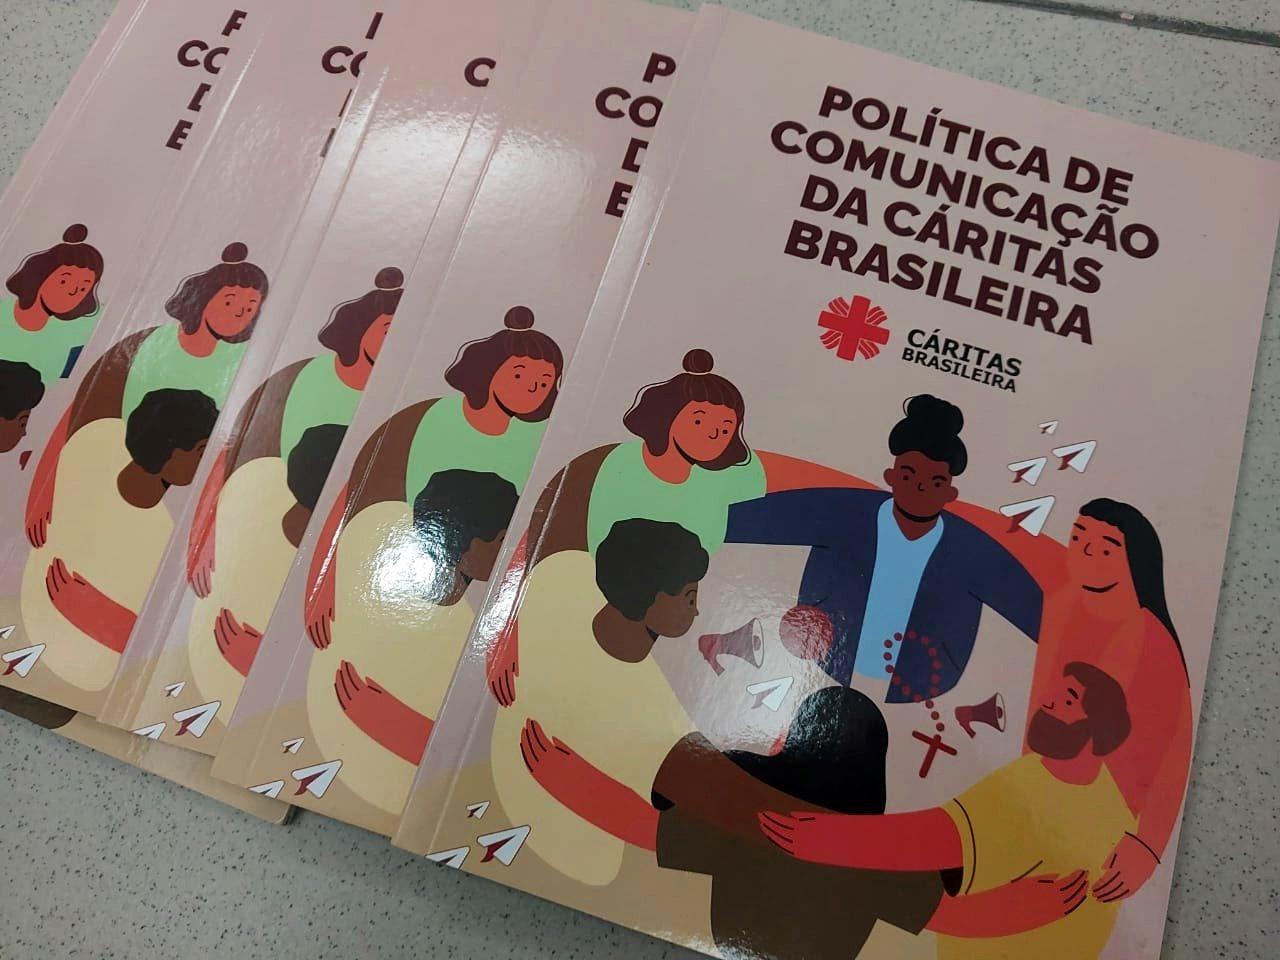 Cáritas Brasileira lança nova Política de Comunicação